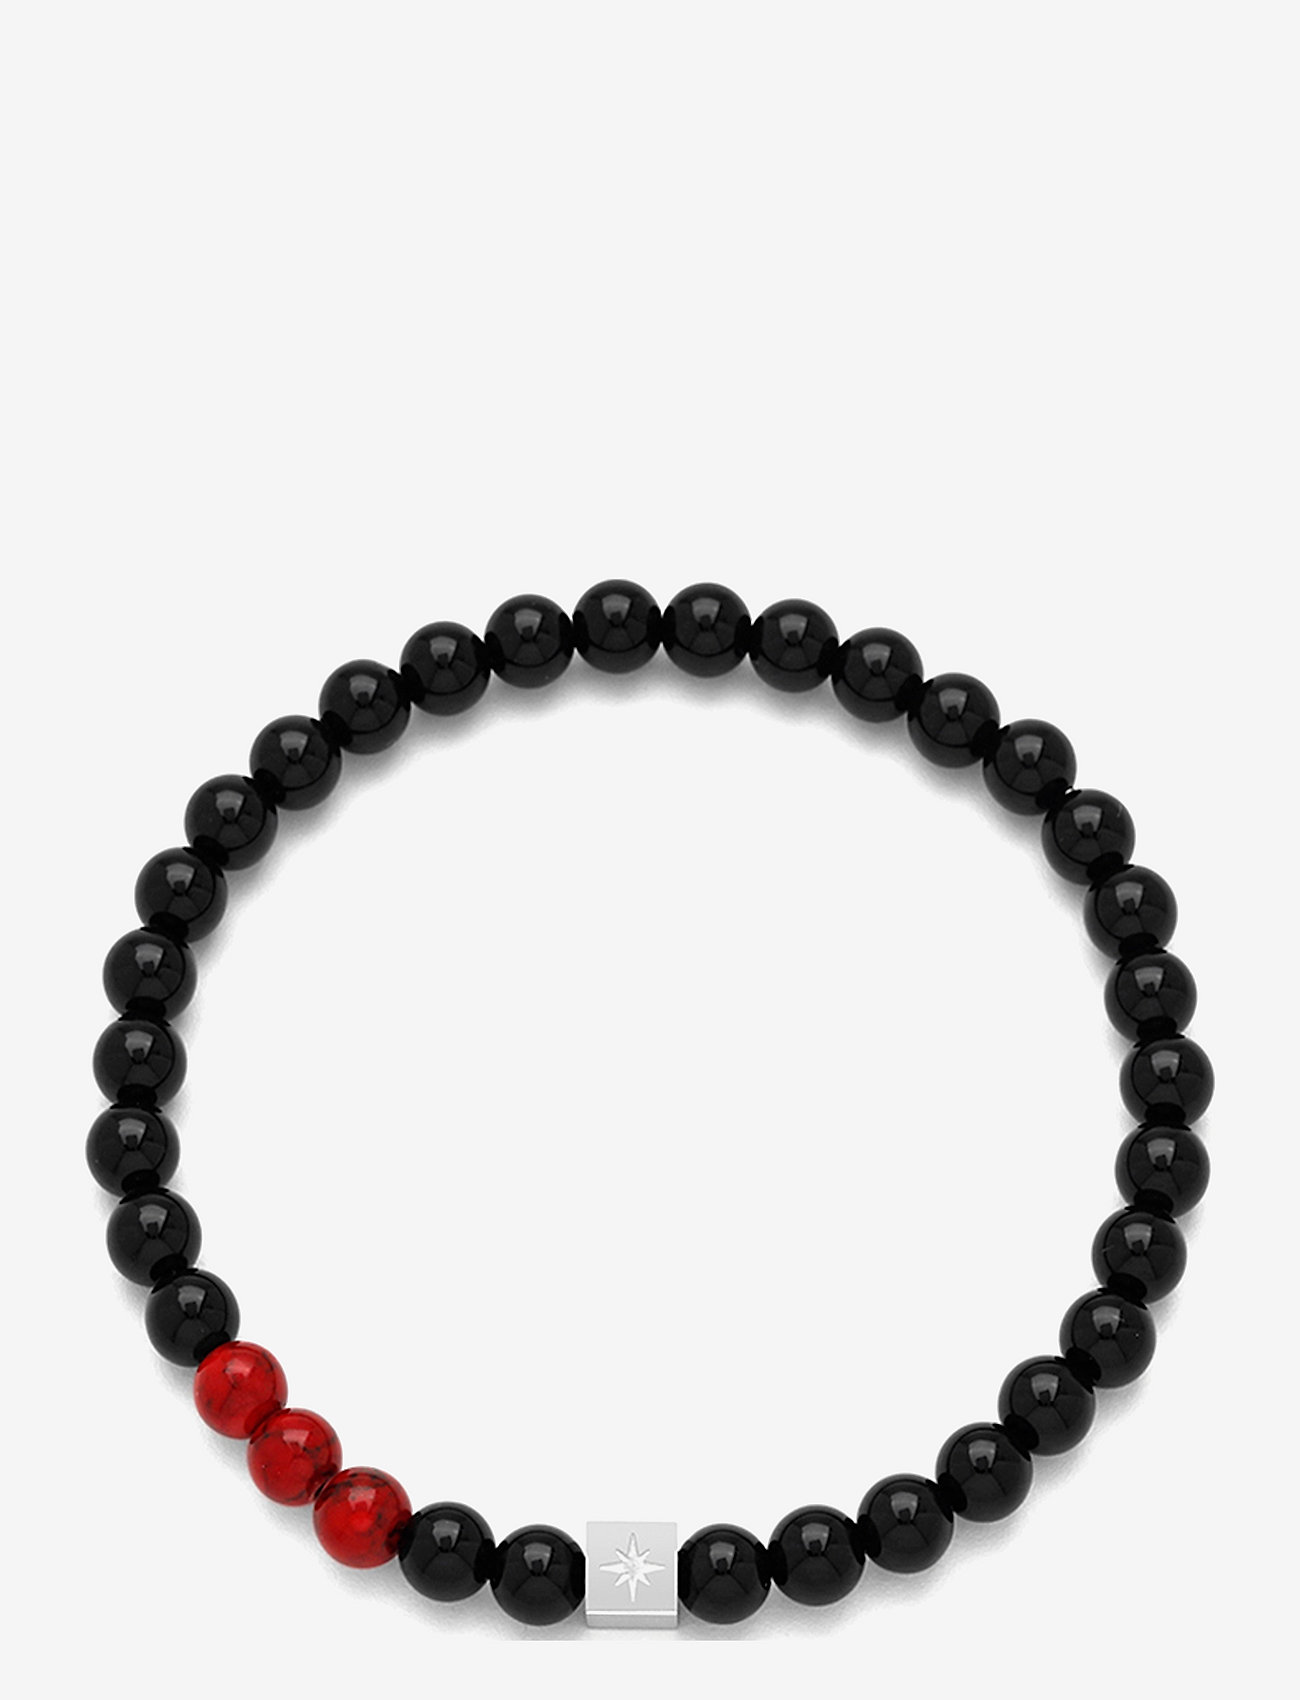 Samie - Nohr - Bracelet with mix beads - lowest prices - swsblack - 0